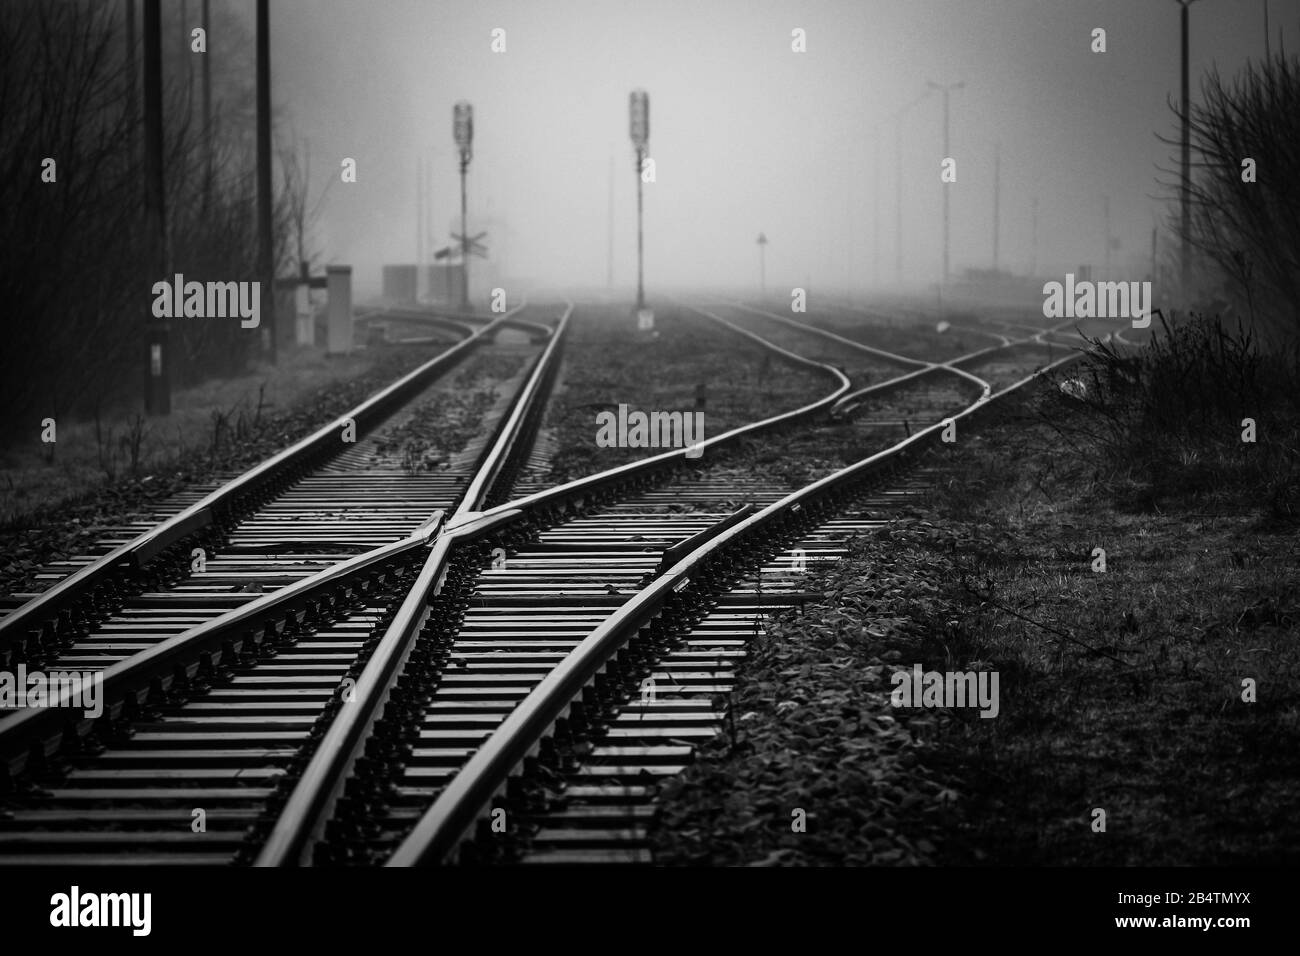 Giunzione ferroviaria con interruttori di pista che scompaiono in nebbia - immagine monocromatica Foto Stock